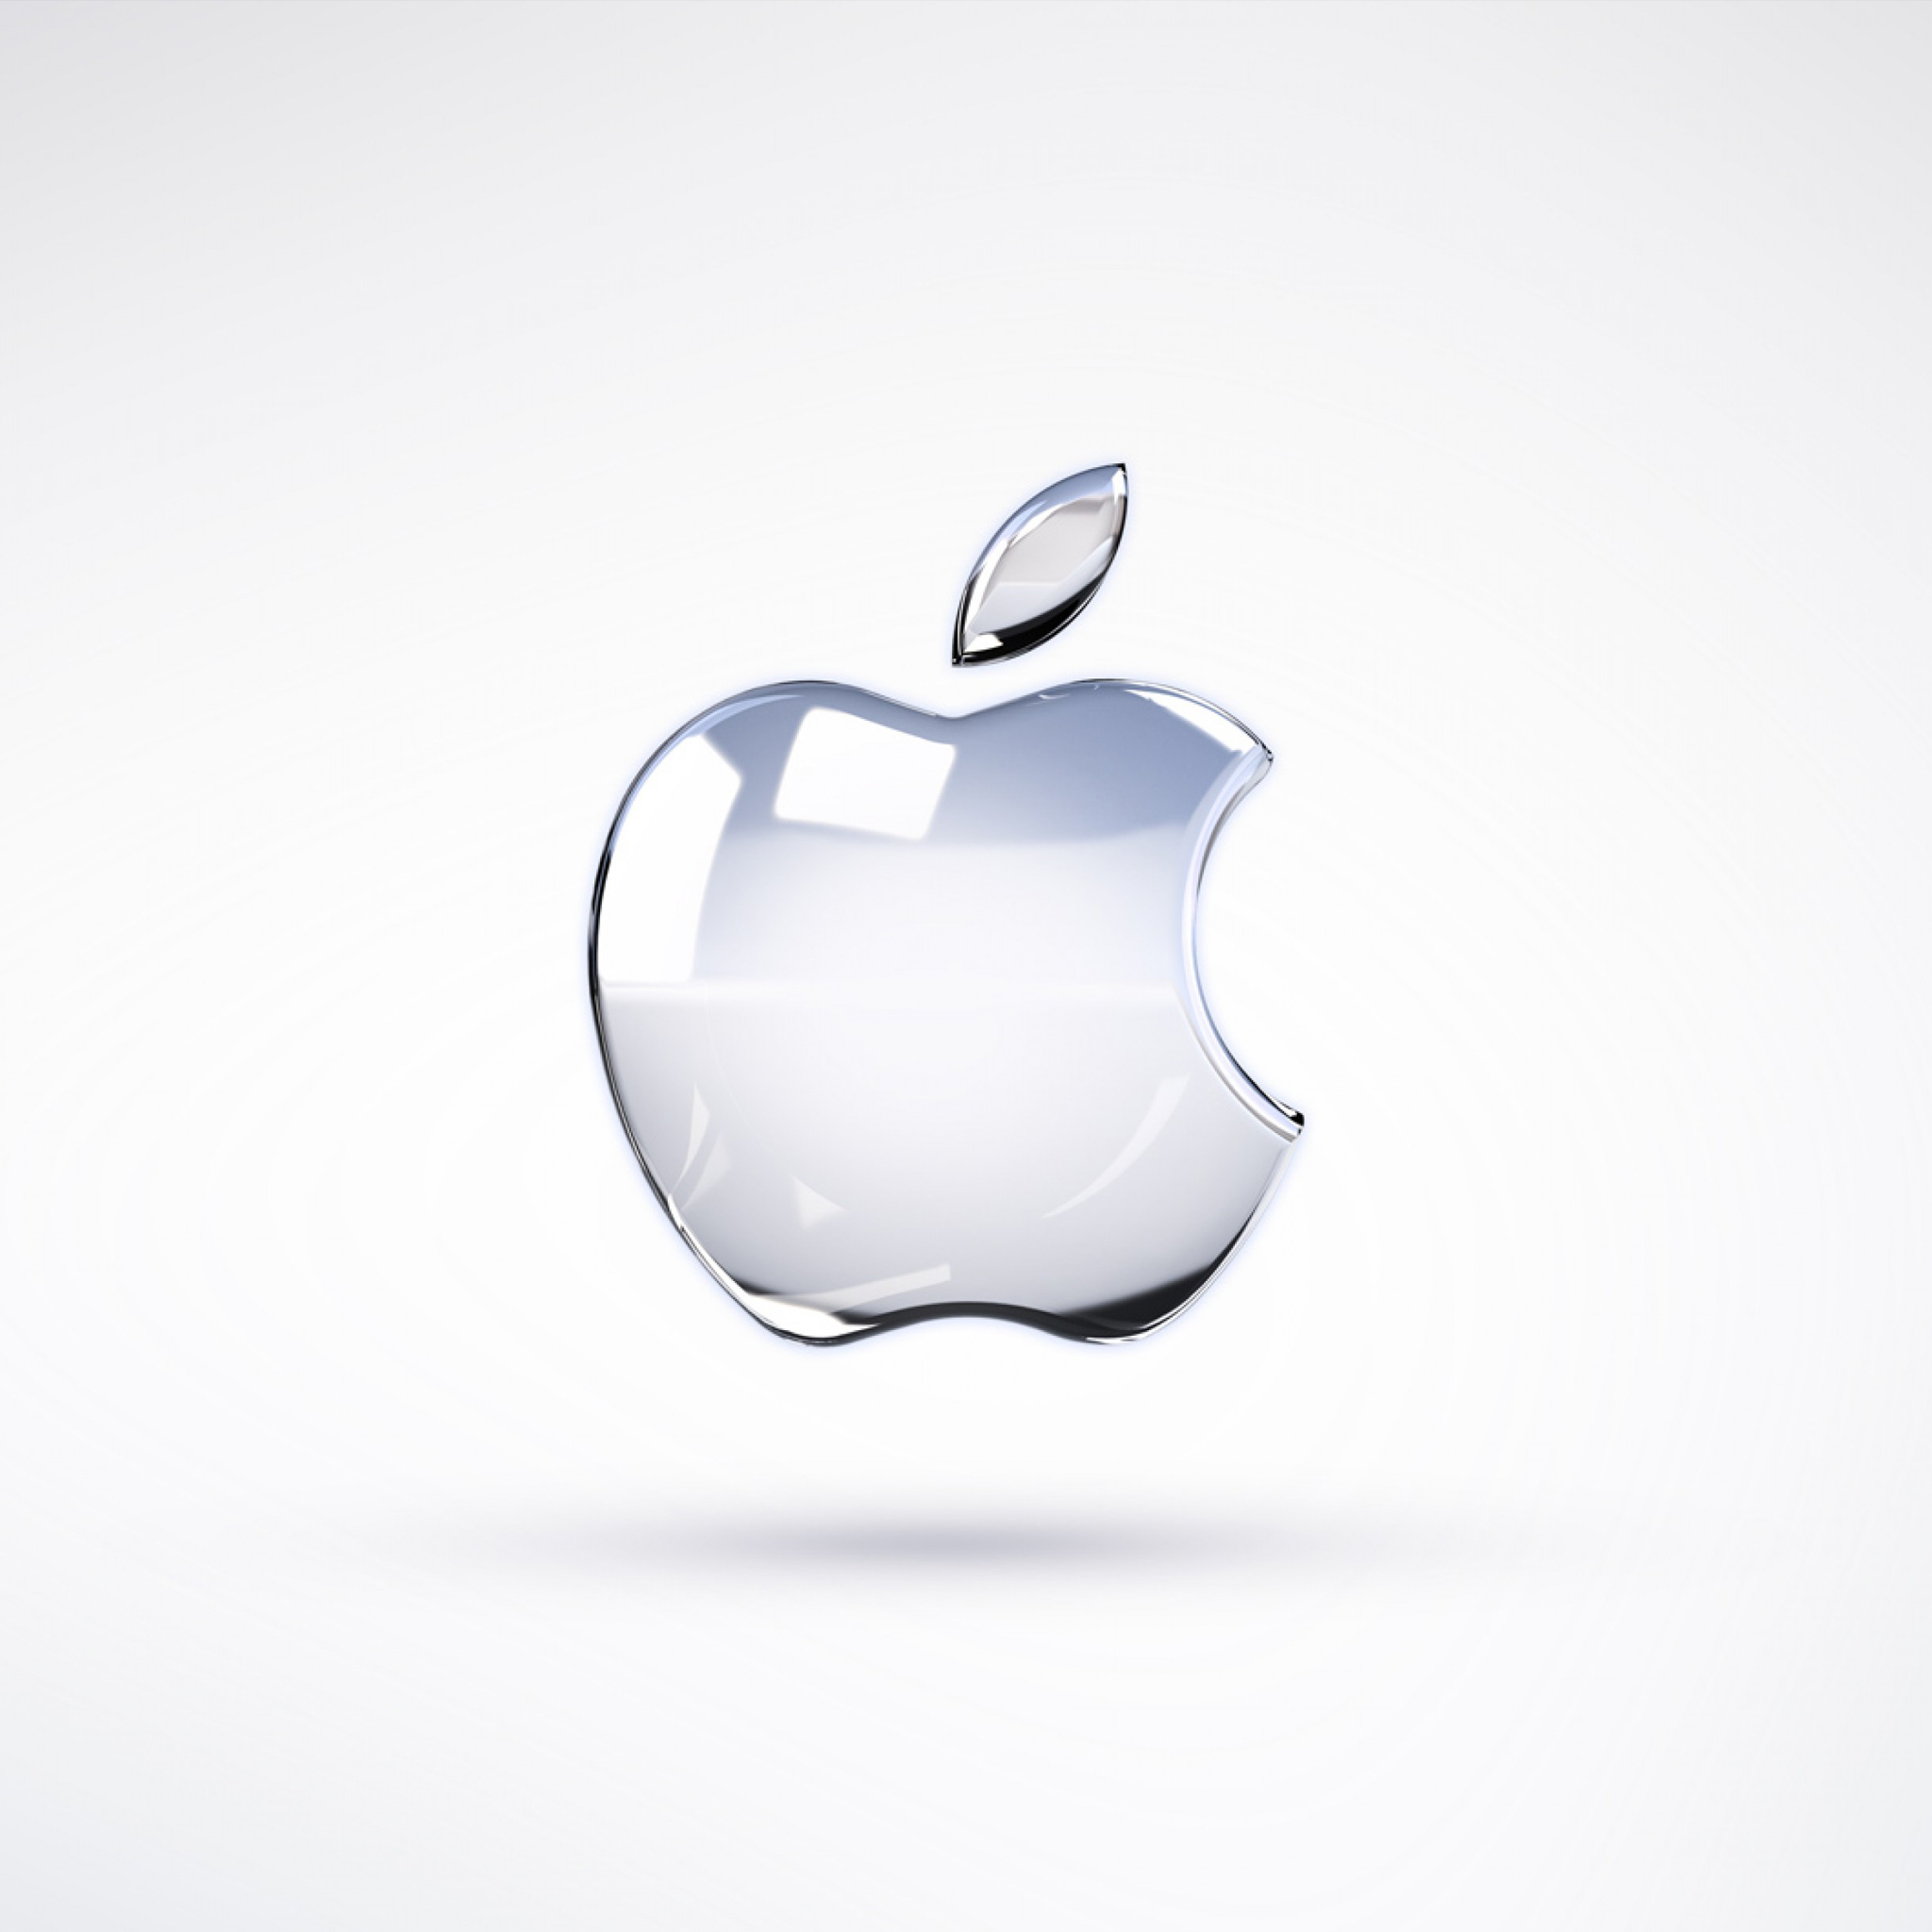 苹果mammoth商标使用权延期,或会用在macos 版本